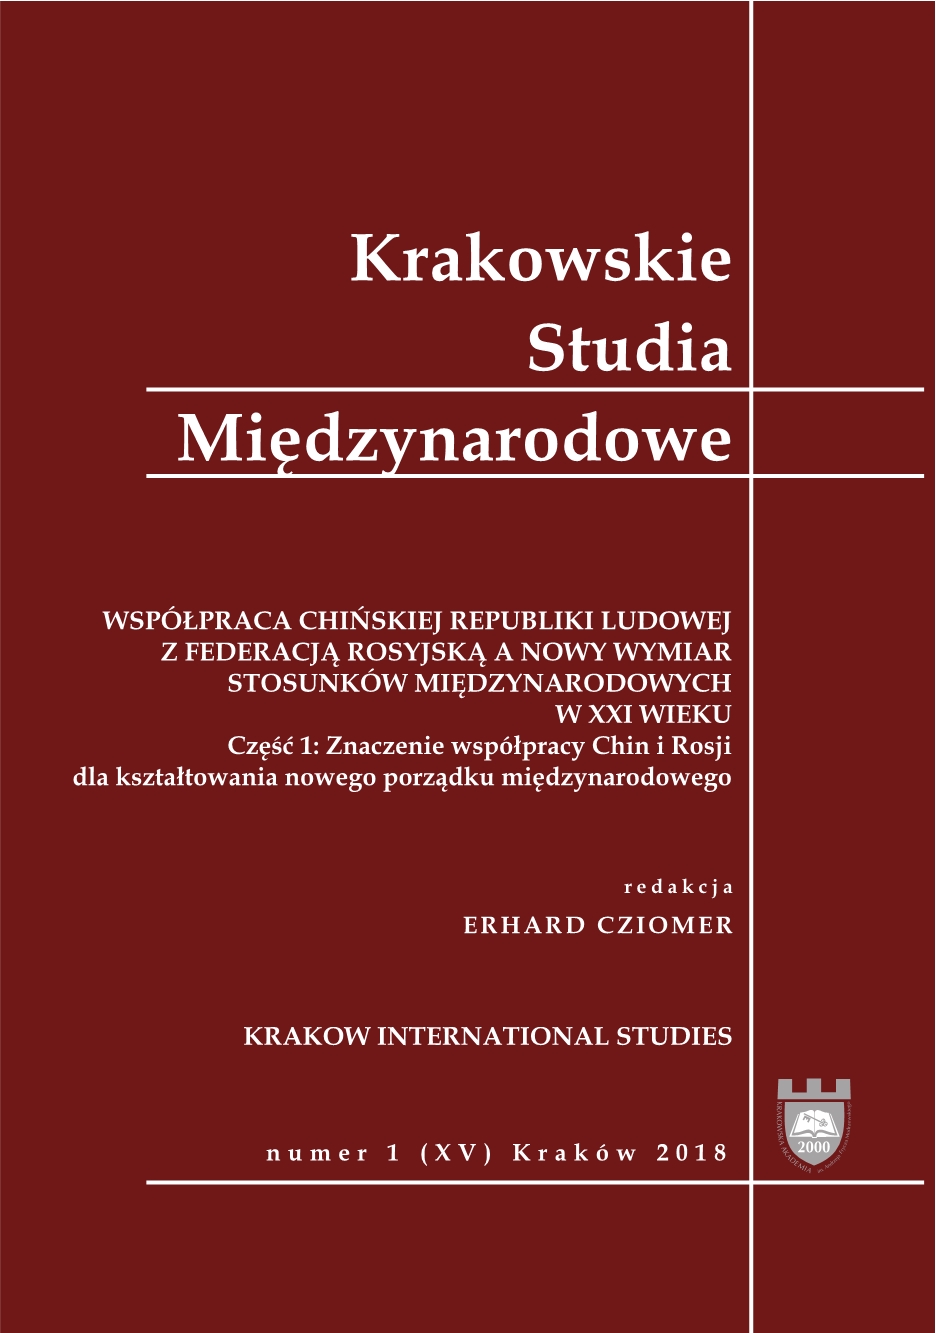 Grzegorz W. Kołodko, Czy Chiny zbawią świat? [Prószyński i S-ka, Warszawa 2018, 222 pp.] Cover Image